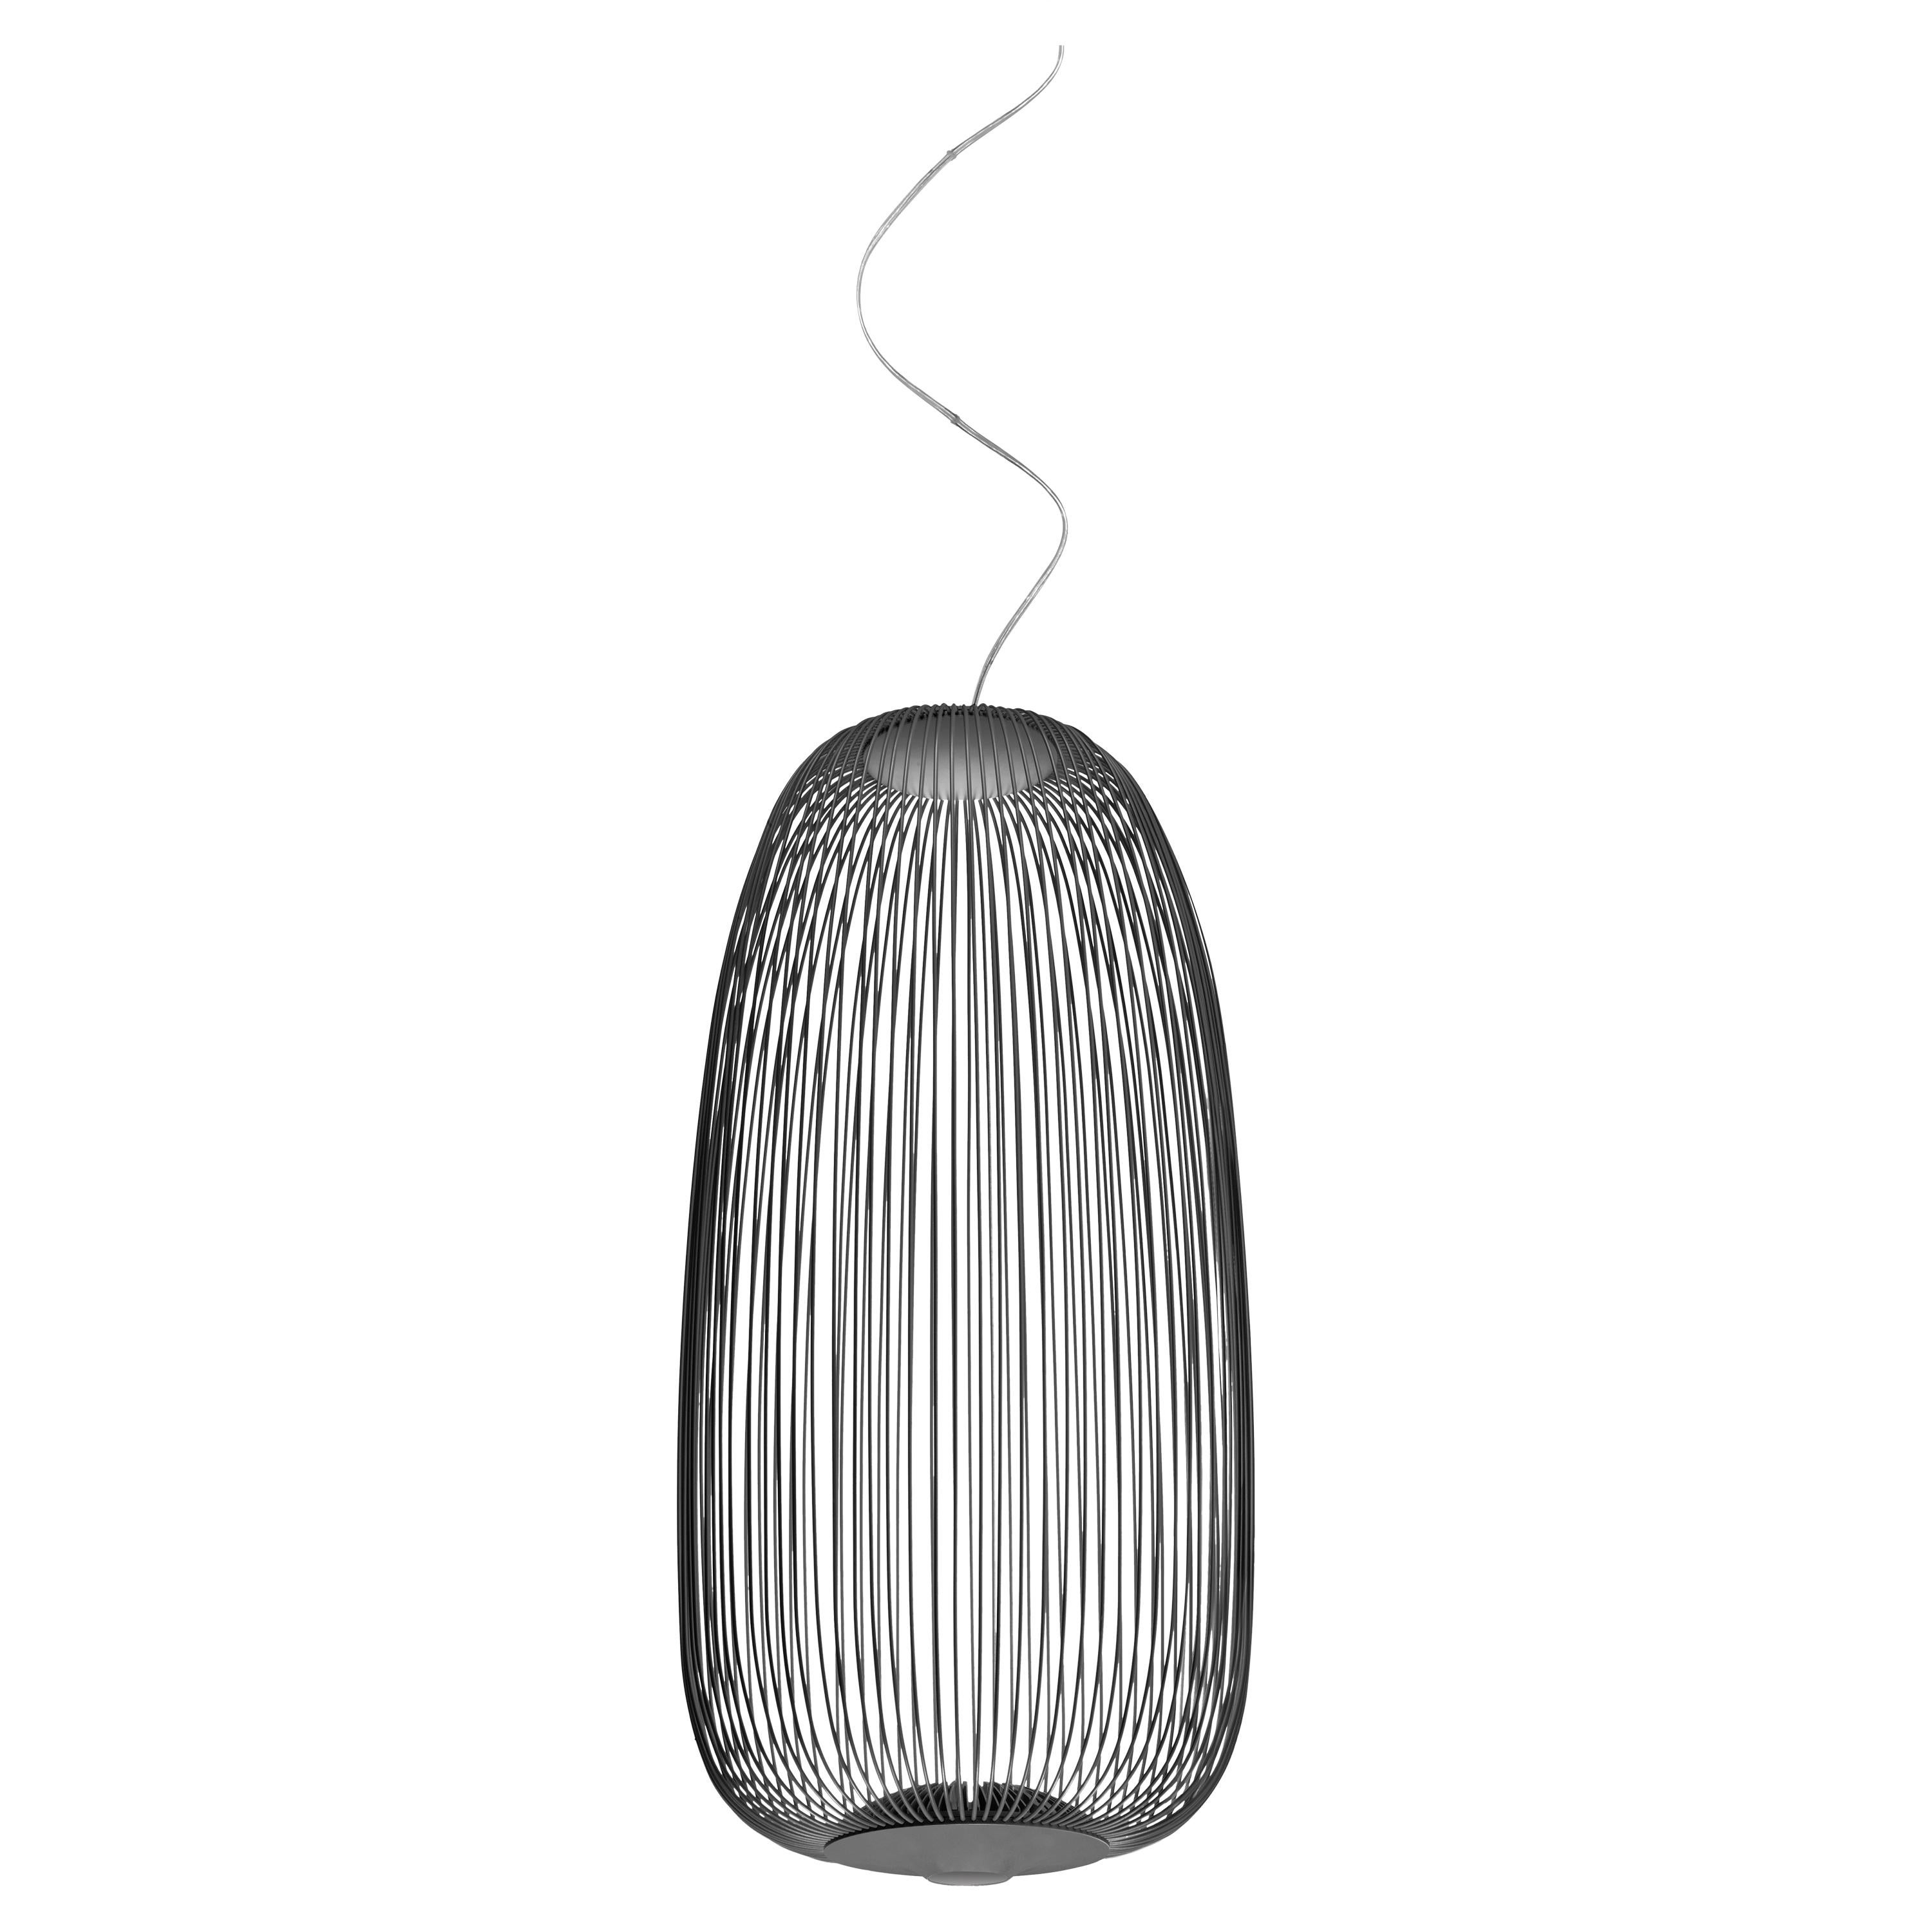 Foscarini Spokes 1 Suspension Lamp in Graphite by Garcia and Cumini